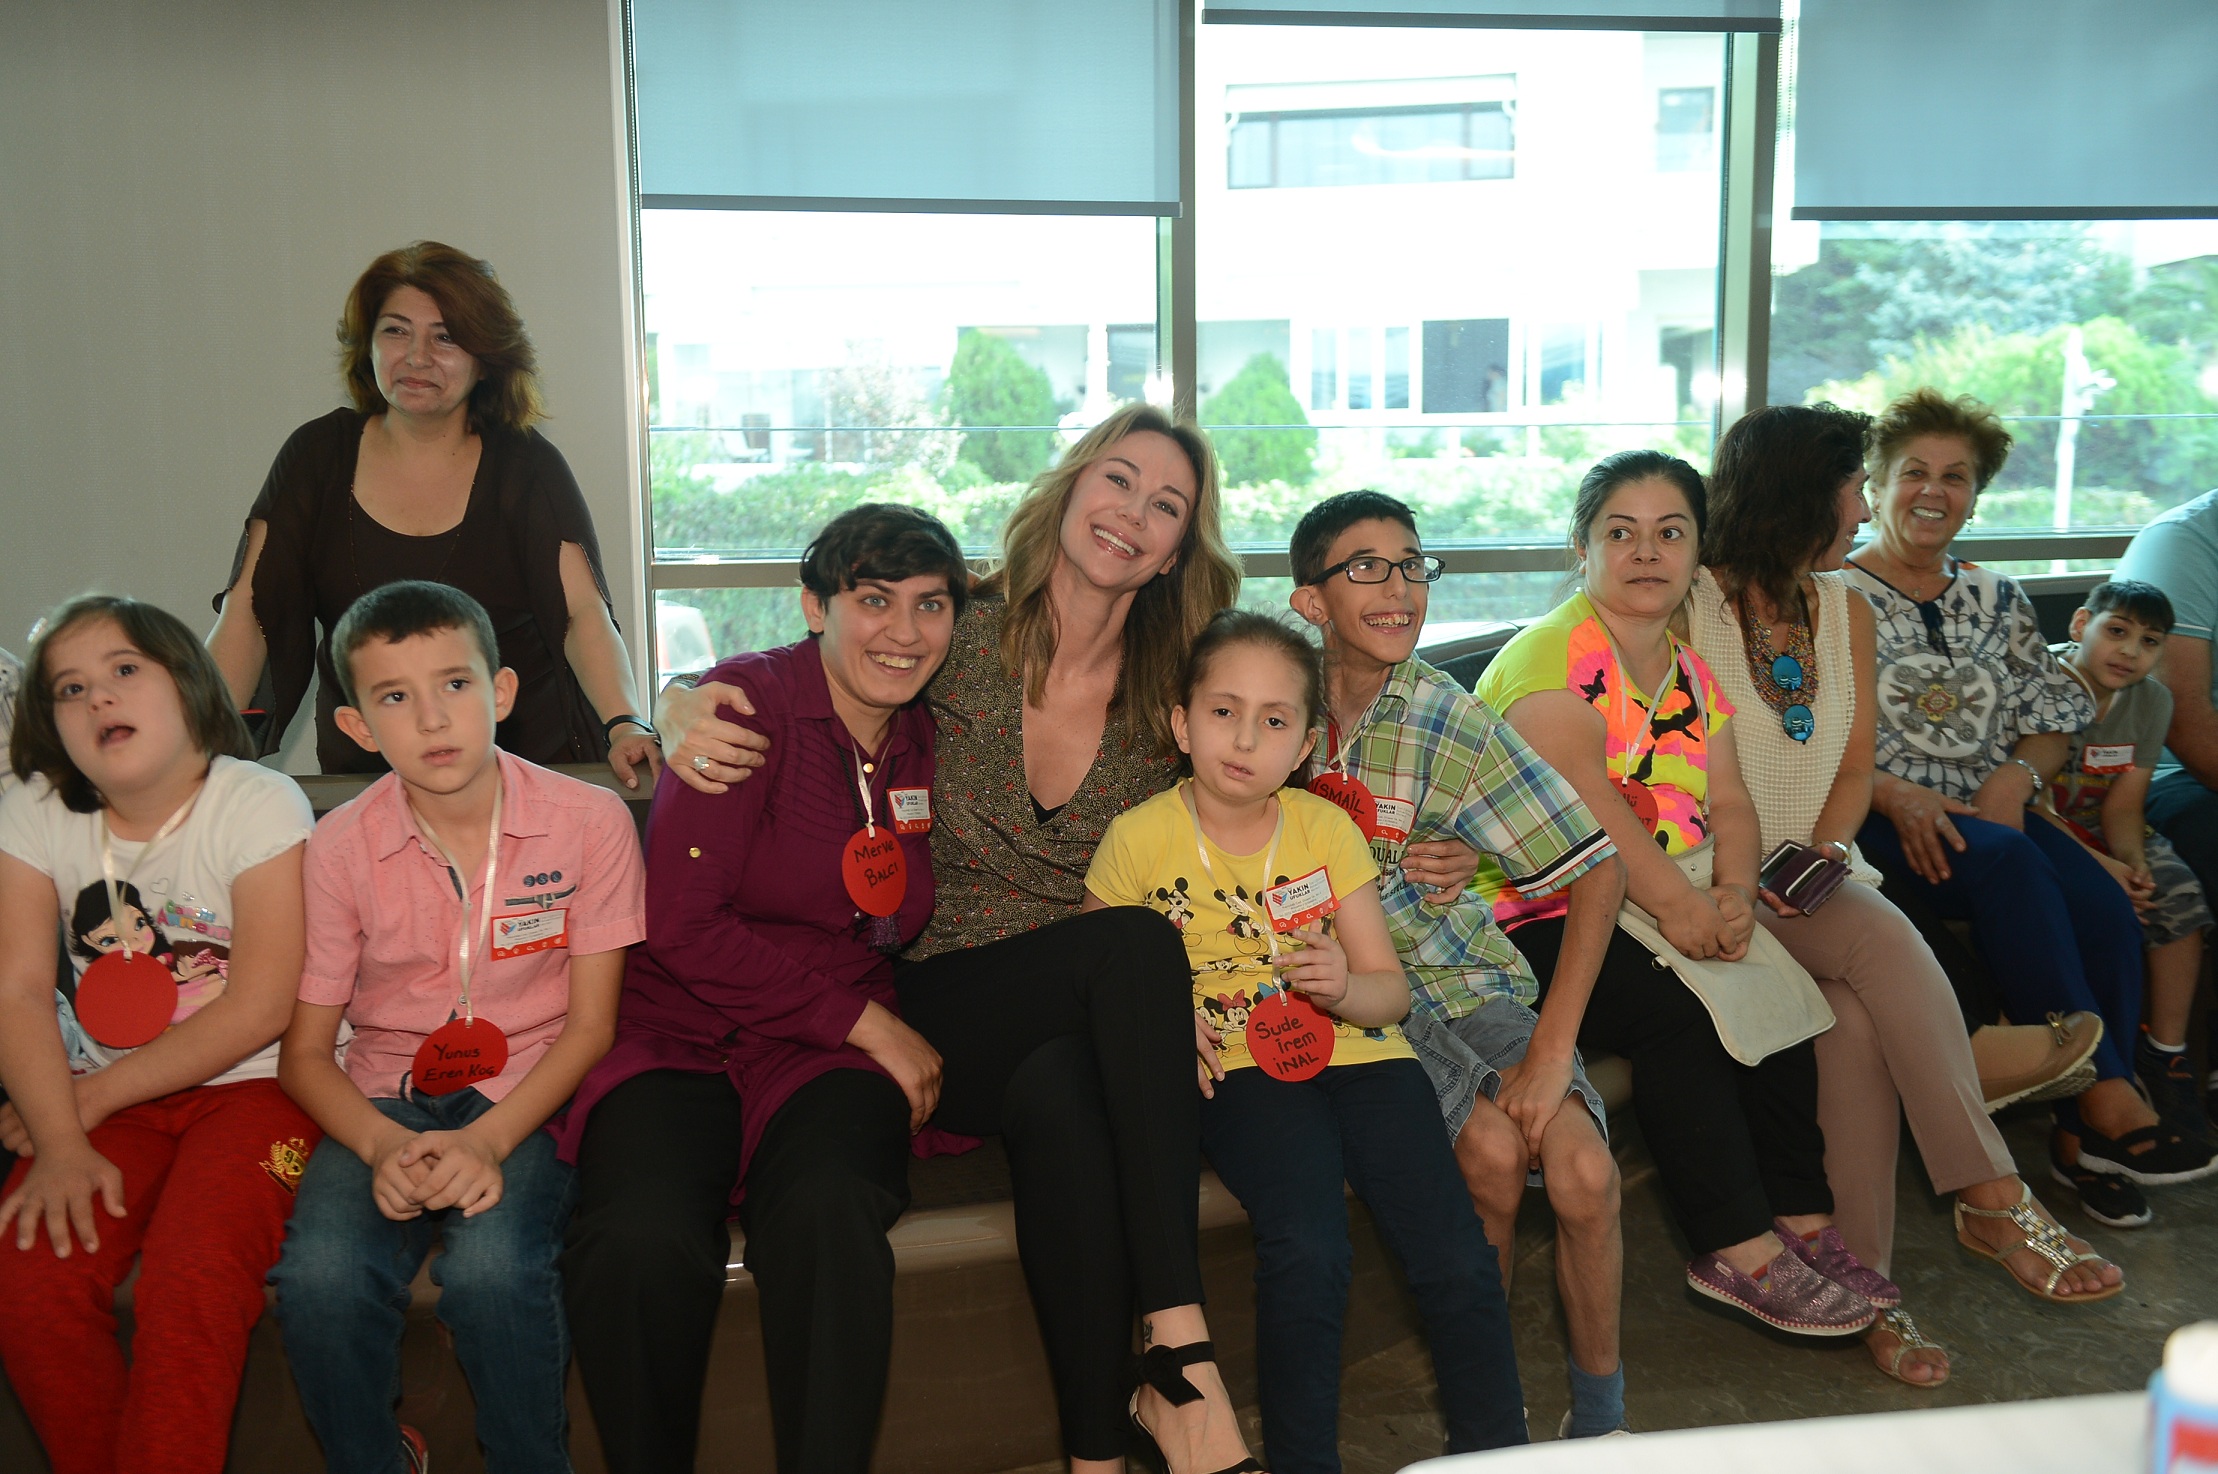 Ünlü sanatçı Ebru Yaşar ile görme engelli çocukların geleceği renkleniyor-2400